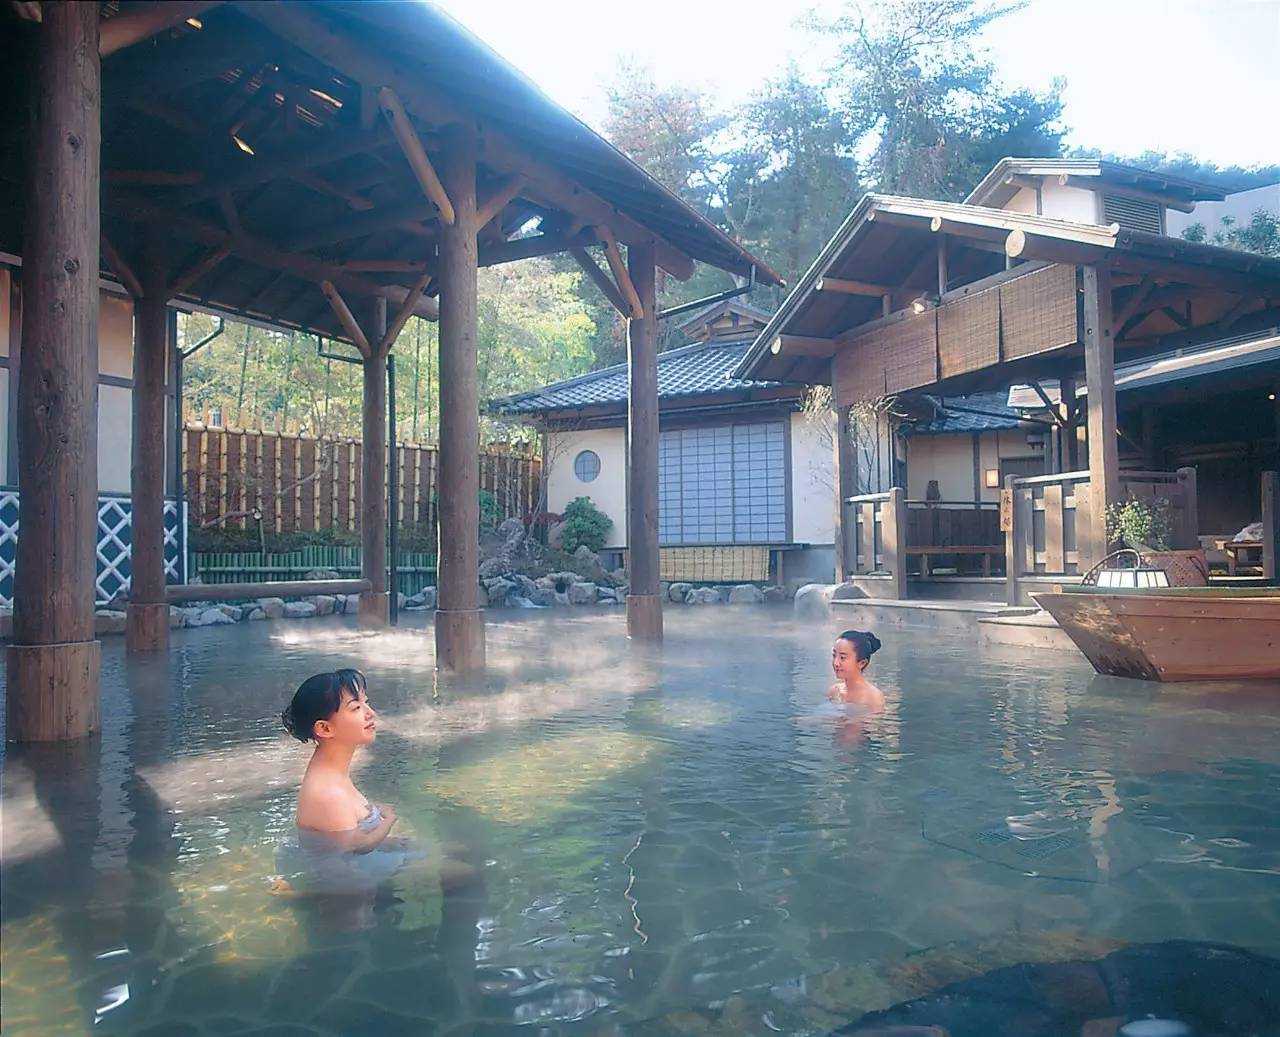 缓解身心疲劳的同时尤其是泡天然的露天温泉来到日本当然要泡温泉啊!